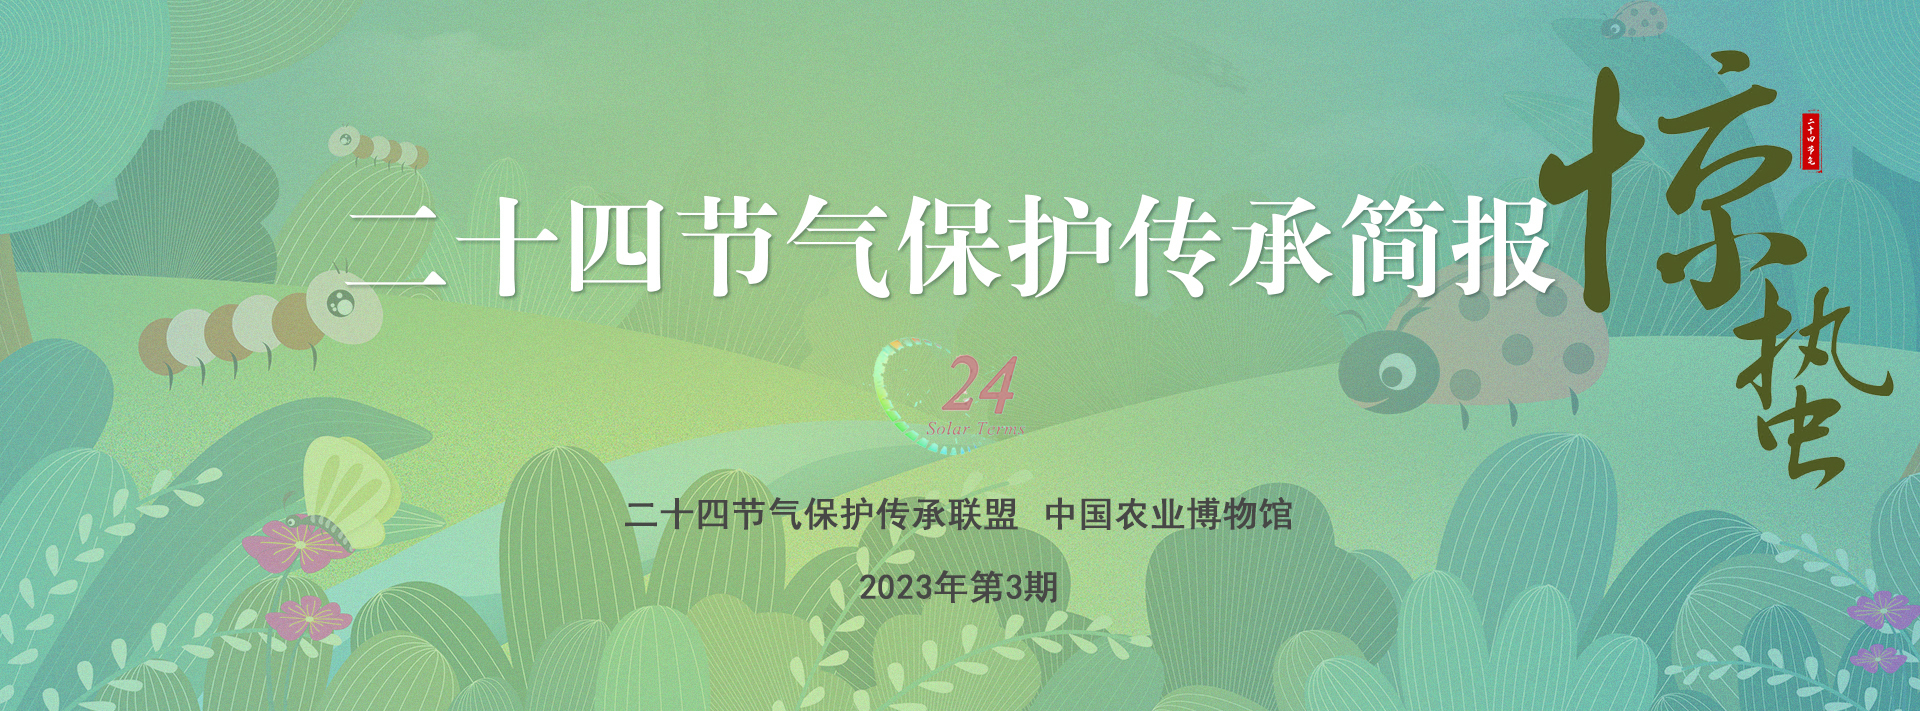 二十四节气保护传承简报 2023年第3期